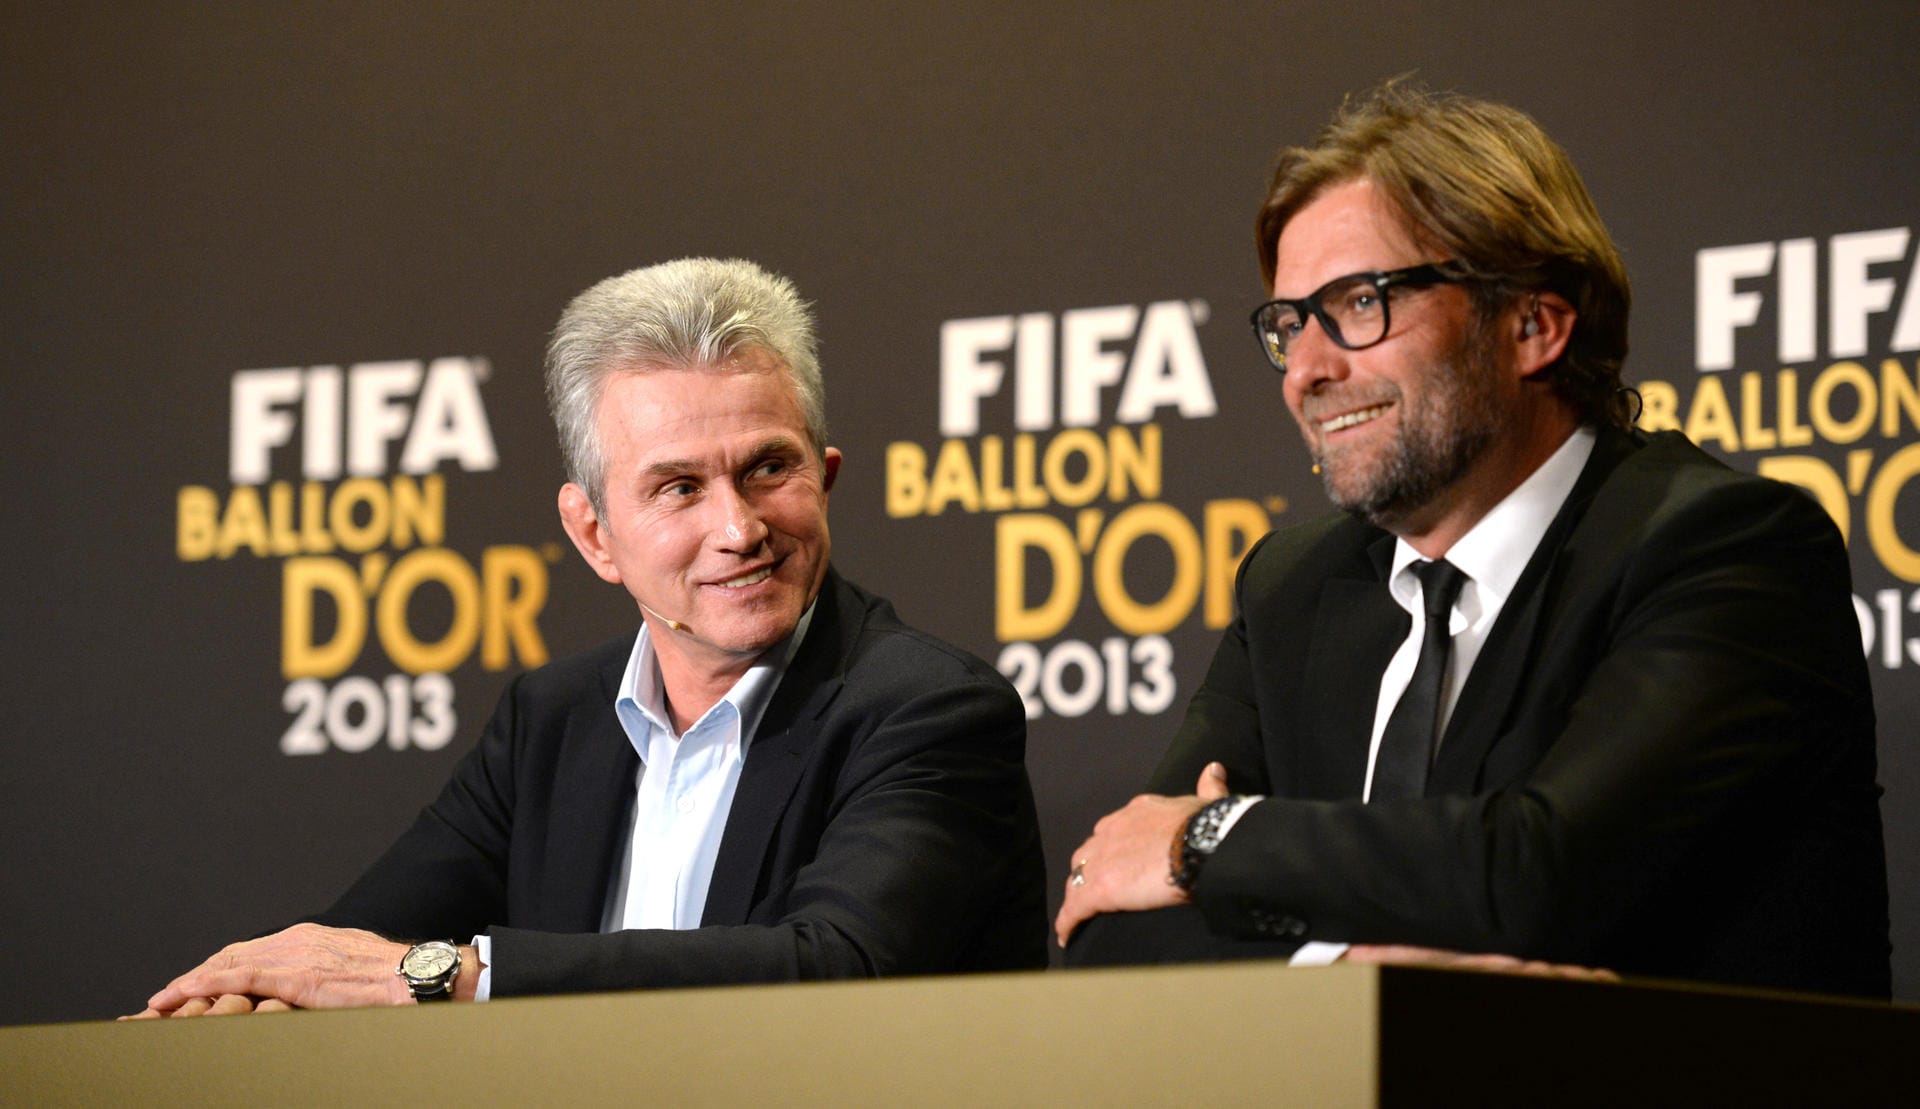 Danach prasselten die Ehrungen auf den Erfolgscoach nur so ein: Der Auszeichnung zum Welttrainer (links, mit Jürgen Klopp auf der FIFA Ballon d'Or Gala 2013 in Zürich am 13. Januar 2014) folgte unter anderem...